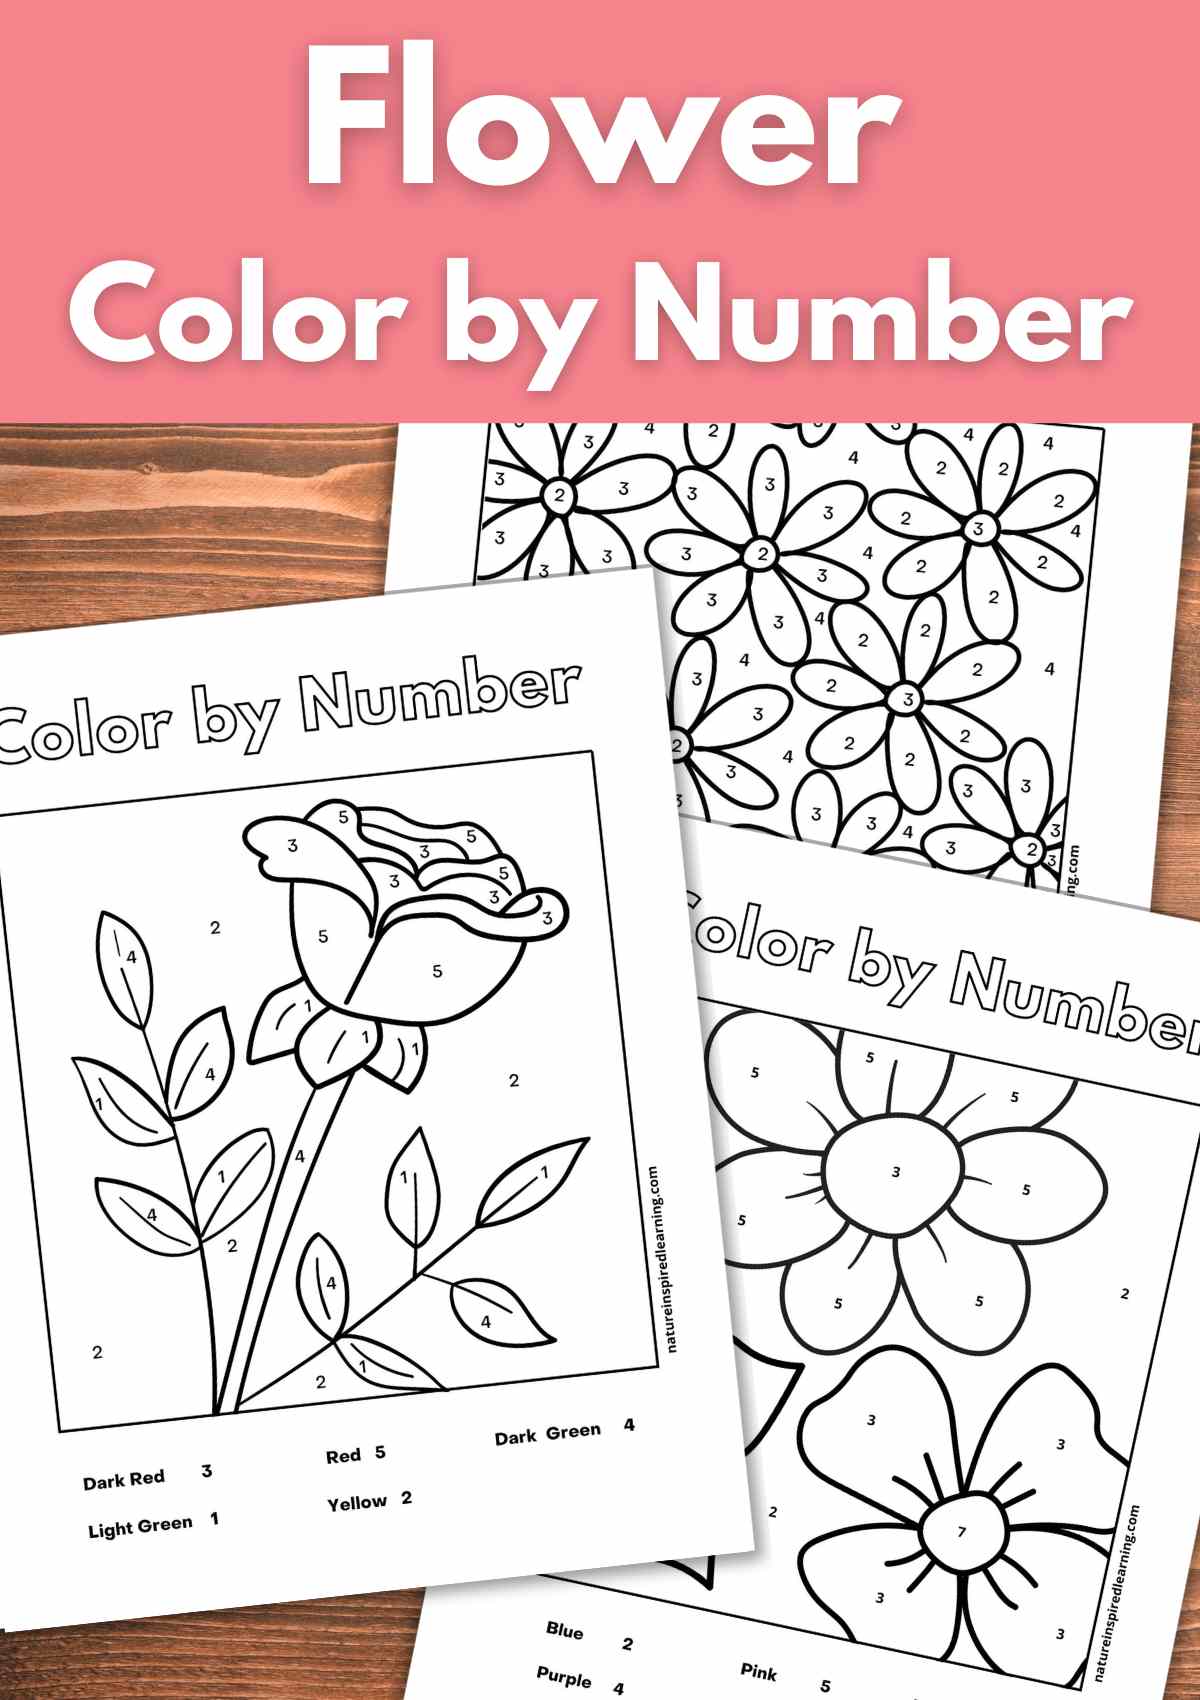 Flower Color-by-Number Worksheet  Spring & Summer Activity for Kids